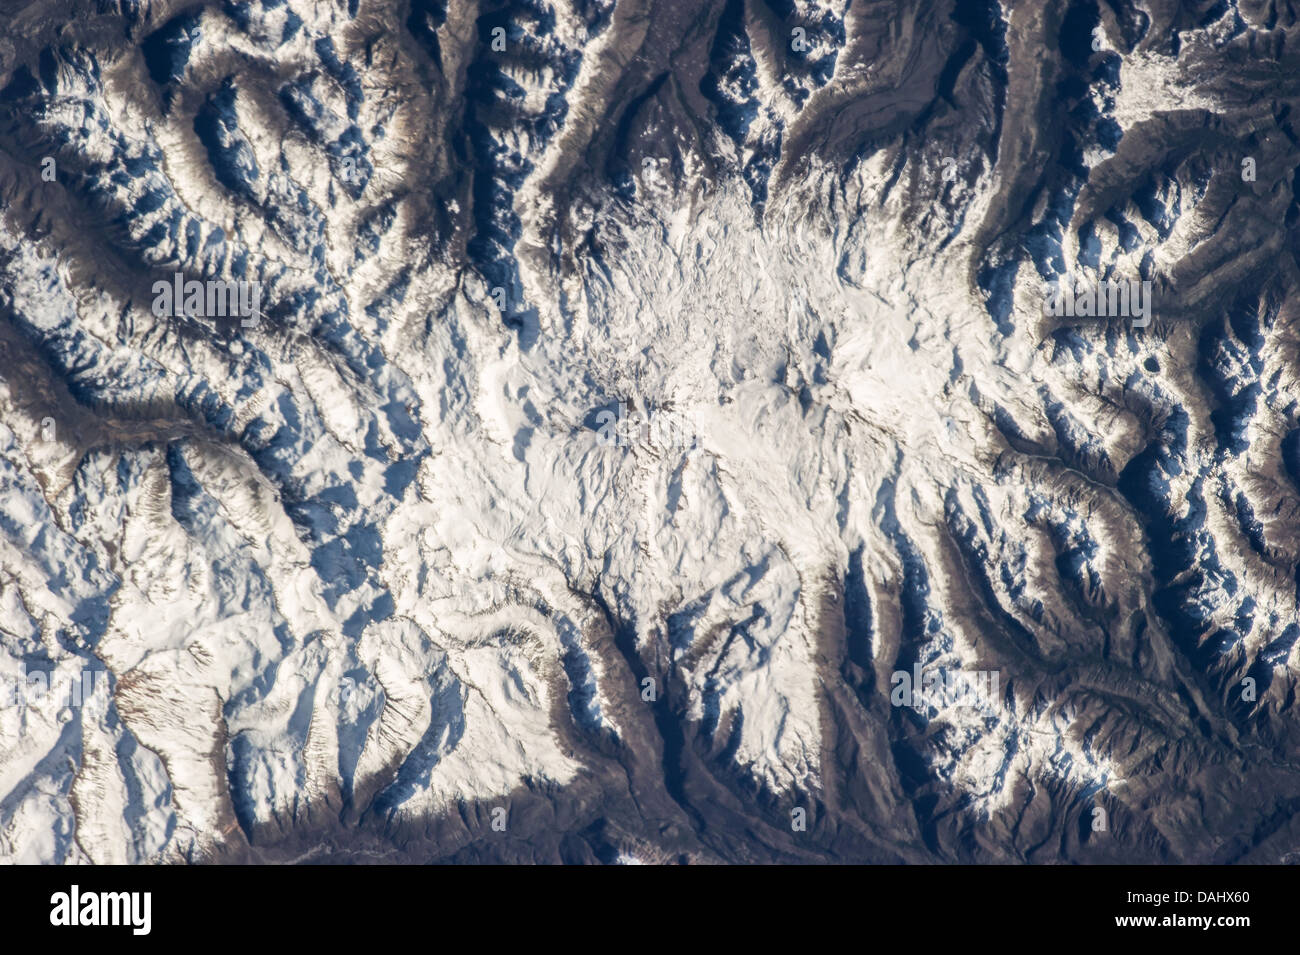 Nevados de Chillán, une grande zone volcanique près de la frontière du Chili et l'Argentine. Banque D'Images